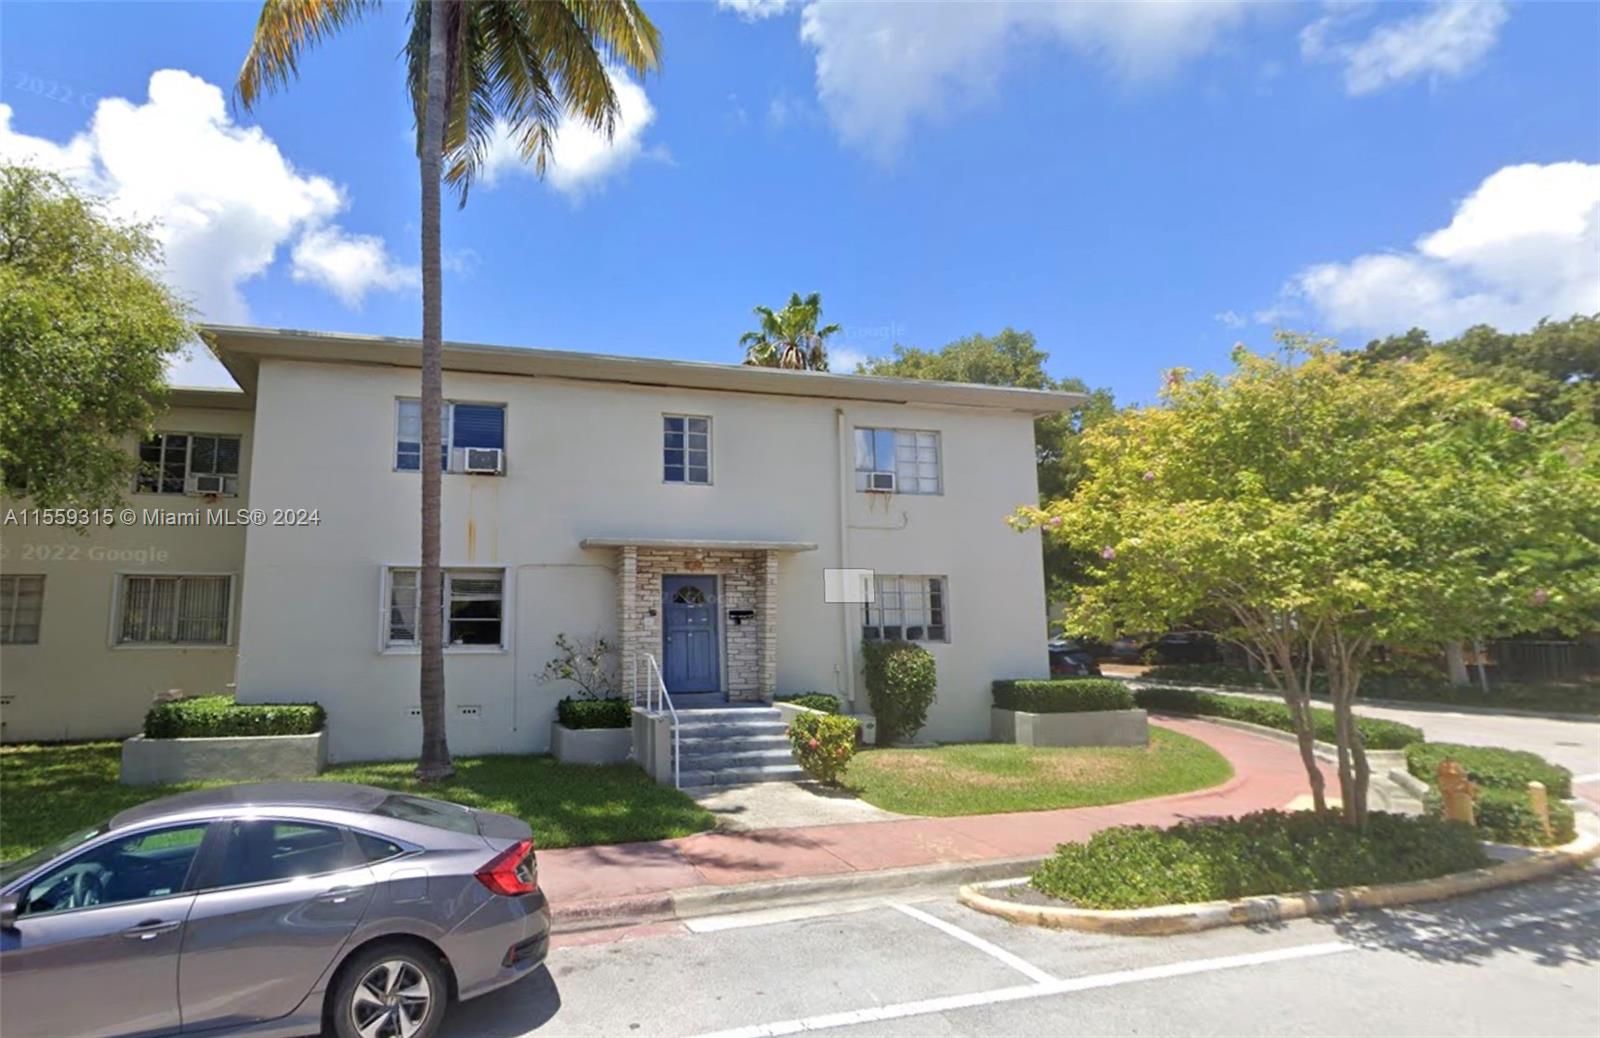 Property for Sale at 8340 Crespi Blvd 18, Miami Beach, Miami-Dade County, Florida - Bedrooms: 2 
Bathrooms: 1  - $210,000